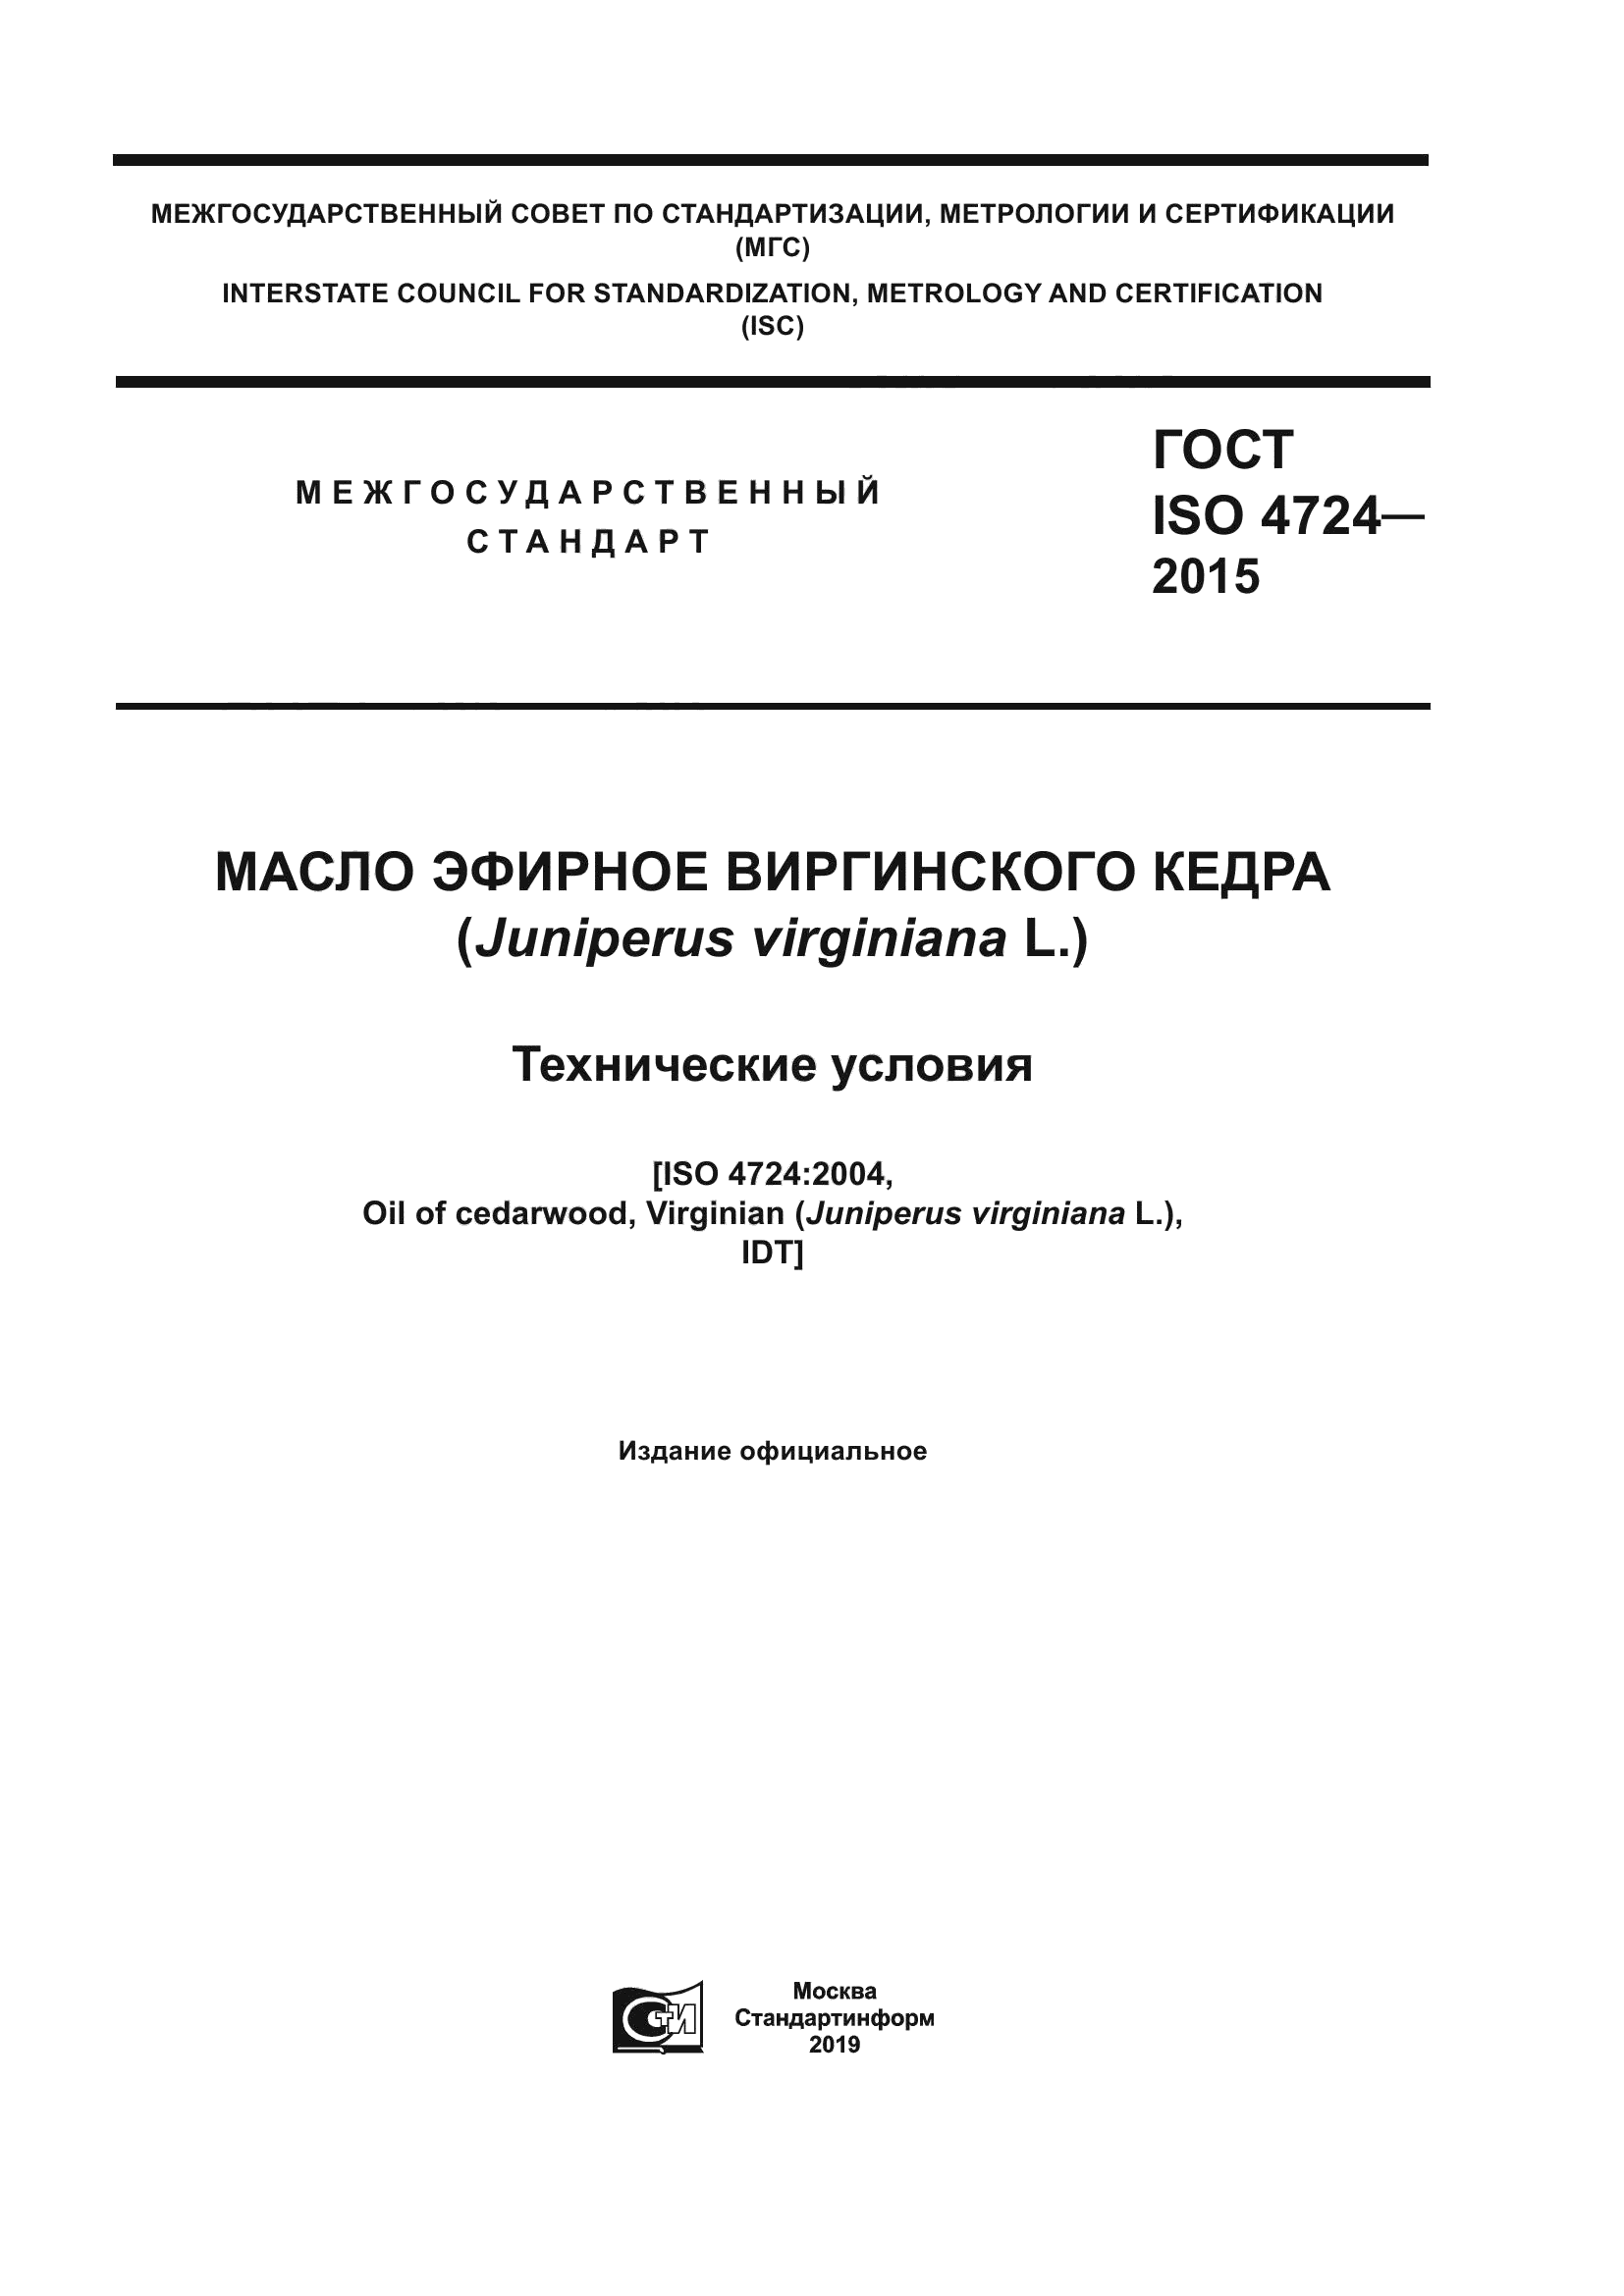 ГОСТ ISO 4724-2015